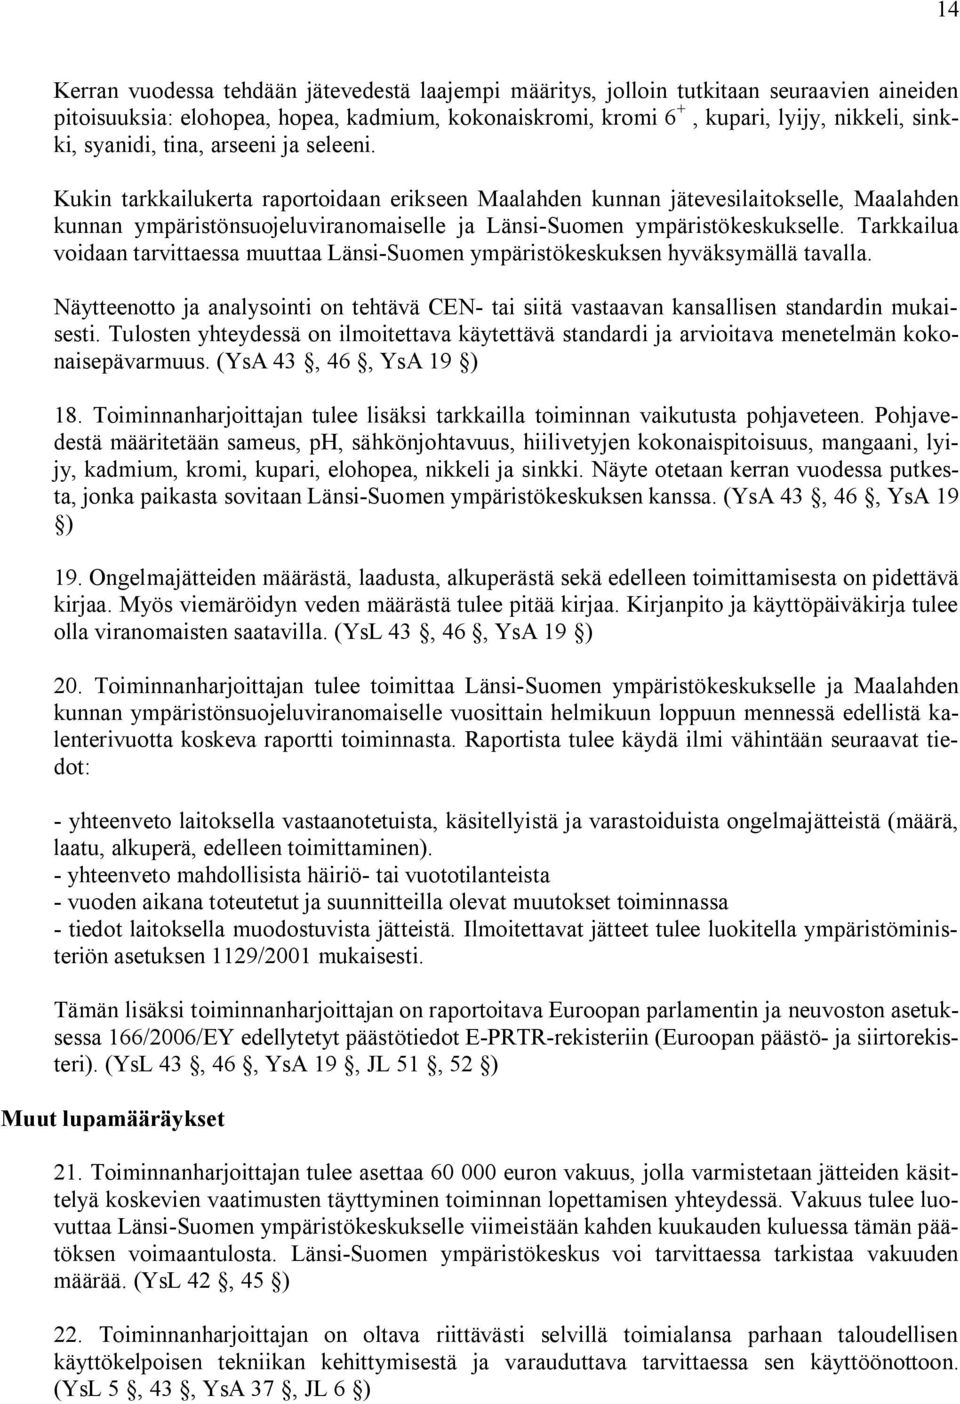 Kukin tarkkailukerta raportoidaan erikseen Maalahden kunnan jätevesilaitokselle, Maalahden kunnan ympäristönsuojeluviranomaiselle ja Länsi Suomen ympäristökeskukselle.